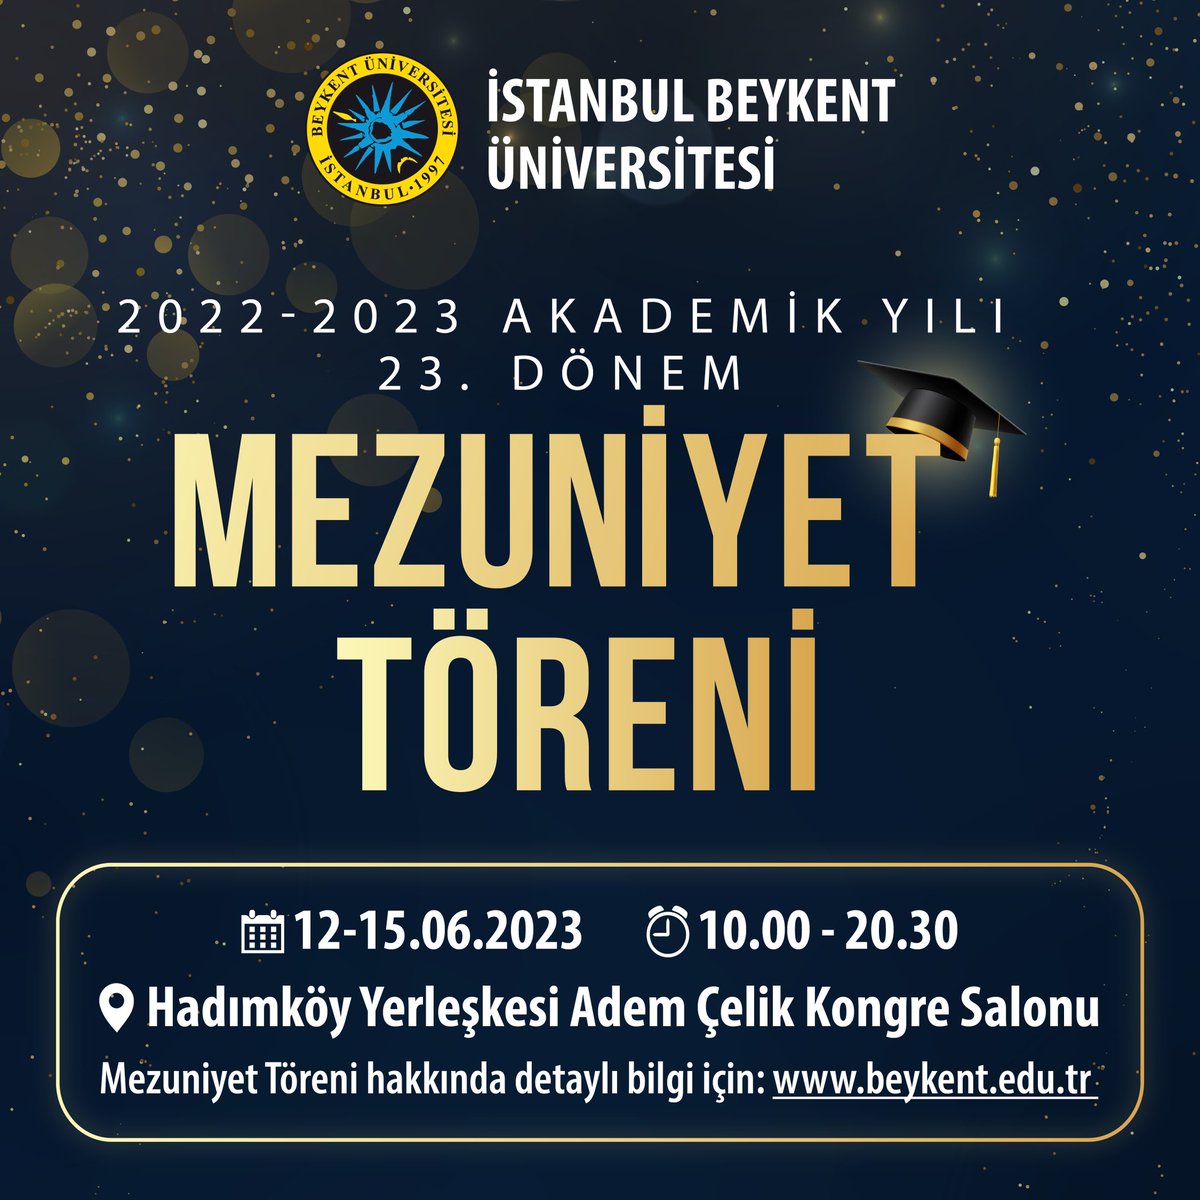 2022-2023 Akademik Yılı 23. Dönem Mezuniyet Töreni, 12-15 Haziran 2023 tarihlerinde Hadımköy Yerleşkesi Adem Çelik Kongre Salonunda!

Mezuniyet Töreni detaylı programı için: beykent.edu.tr/haberler/detay… 

#İstanbulBeykentÜniversitesi #MezuniyetTöreni #İşteGelecek